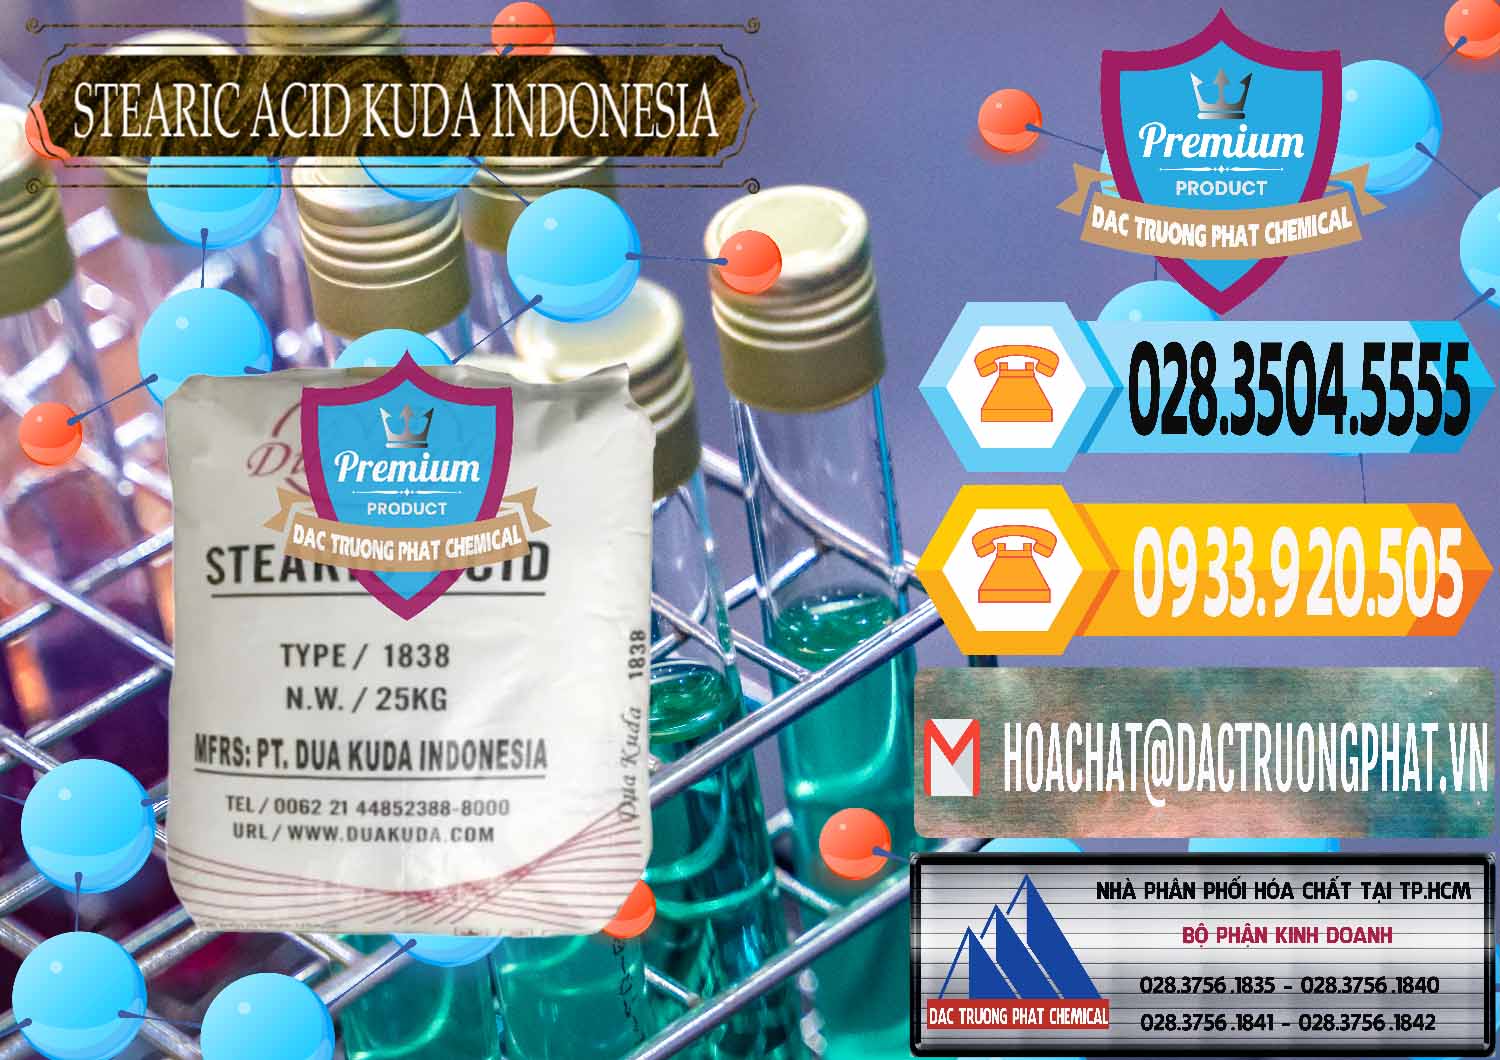 Nơi phân phối _ bán Axit Stearic - Stearic Acid Dua Kuda Indonesia - 0388 - Đơn vị nhập khẩu ( phân phối ) hóa chất tại TP.HCM - hoachattayrua.net